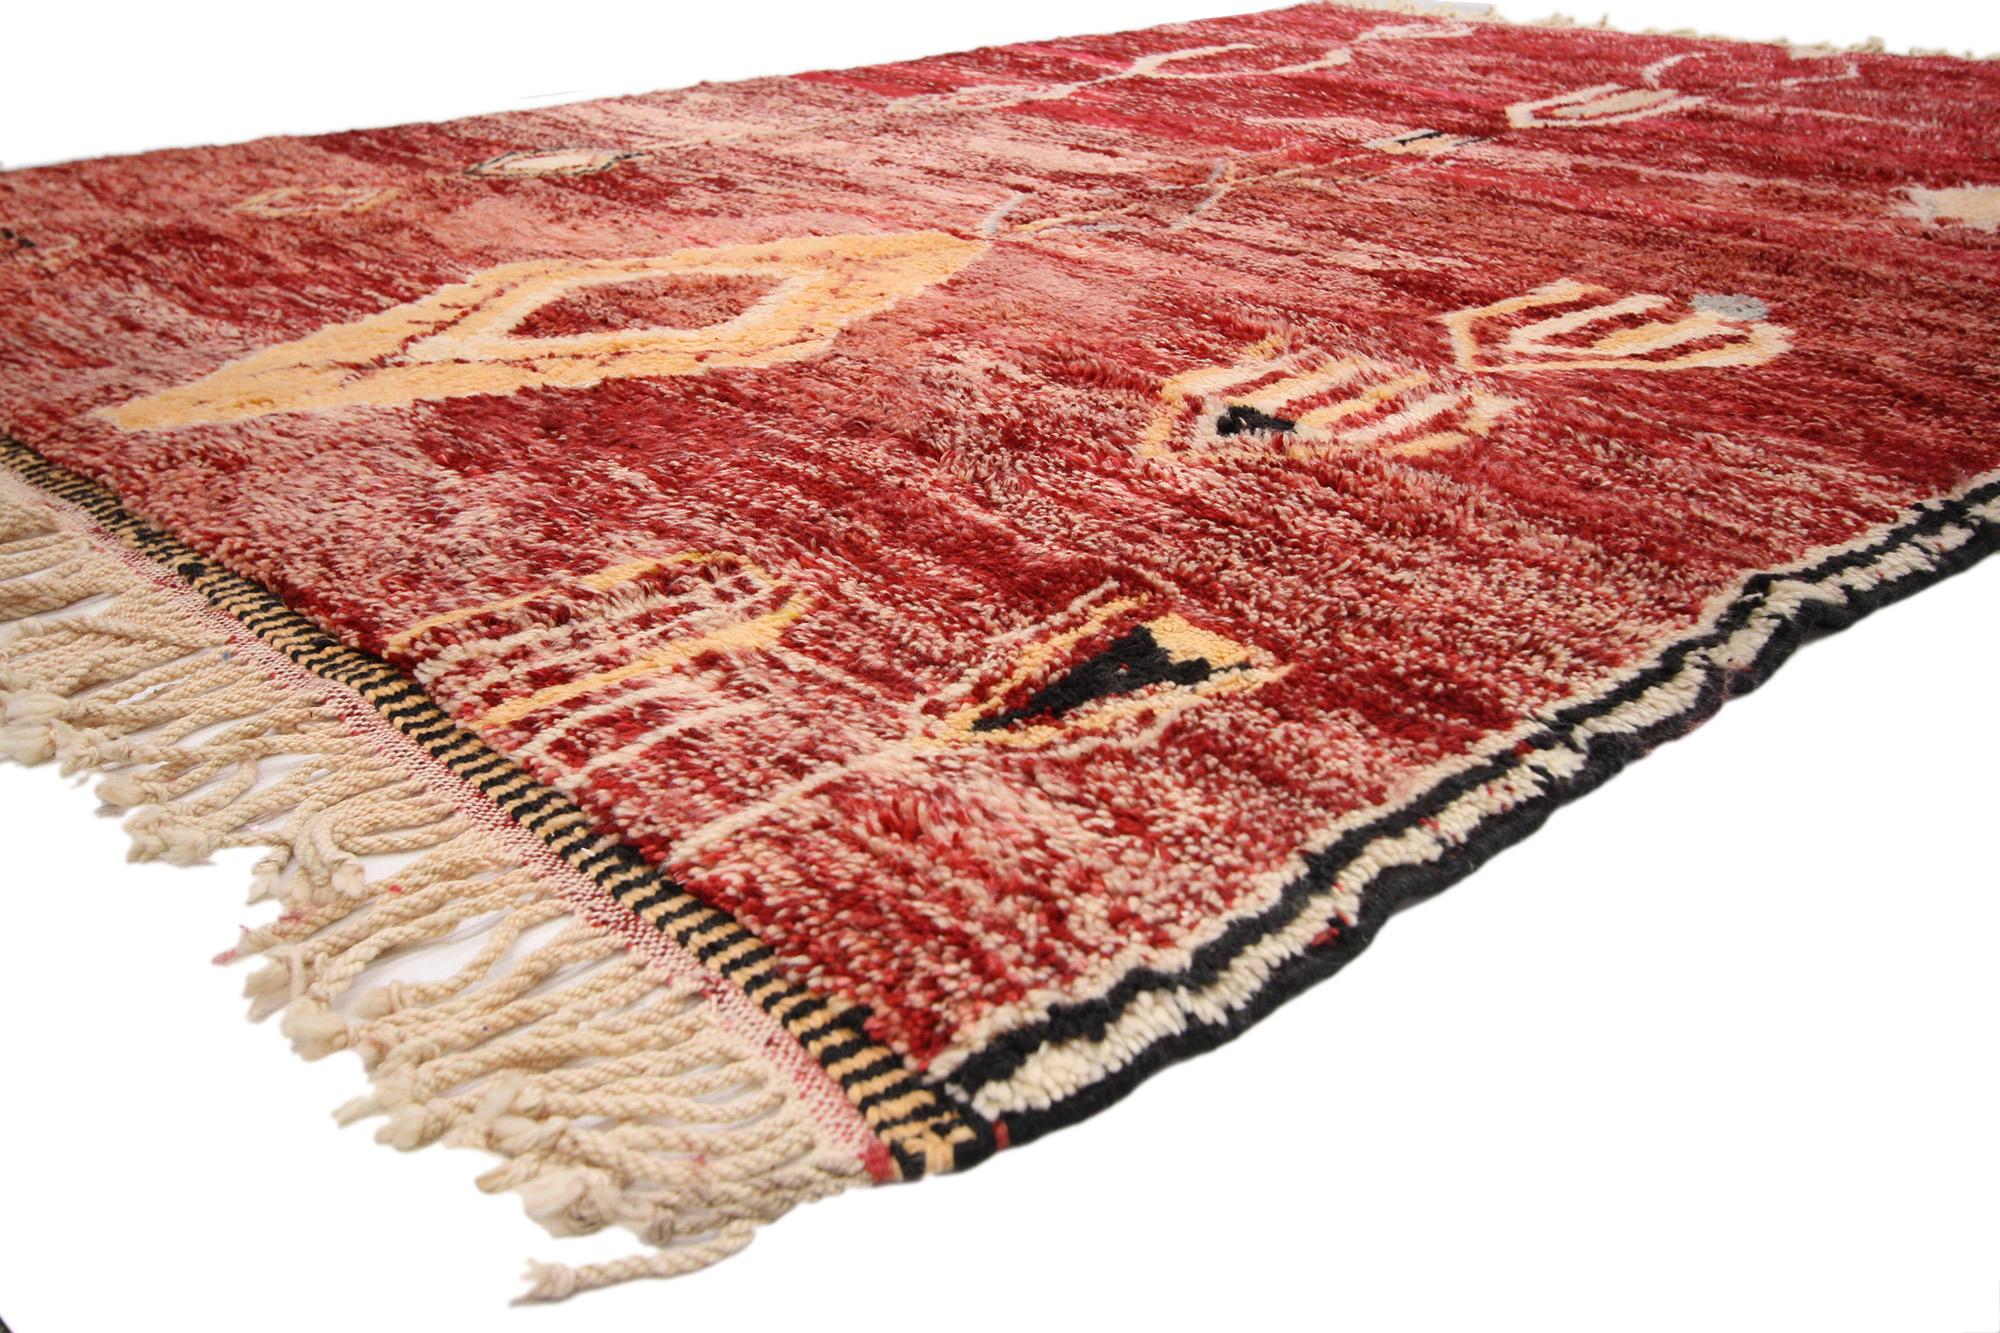 20732 Vintage Rot Beni Mrirt Marokkanischer Teppich, 06'10 x 09'09. Beni Mrirt Teppiche verkörpern die geschätzte Tradition der marokkanischen Weberei, die für ihre üppige Textur, ihre geometrischen Muster und ihre ruhigen Erdtöne bekannt ist. Diese